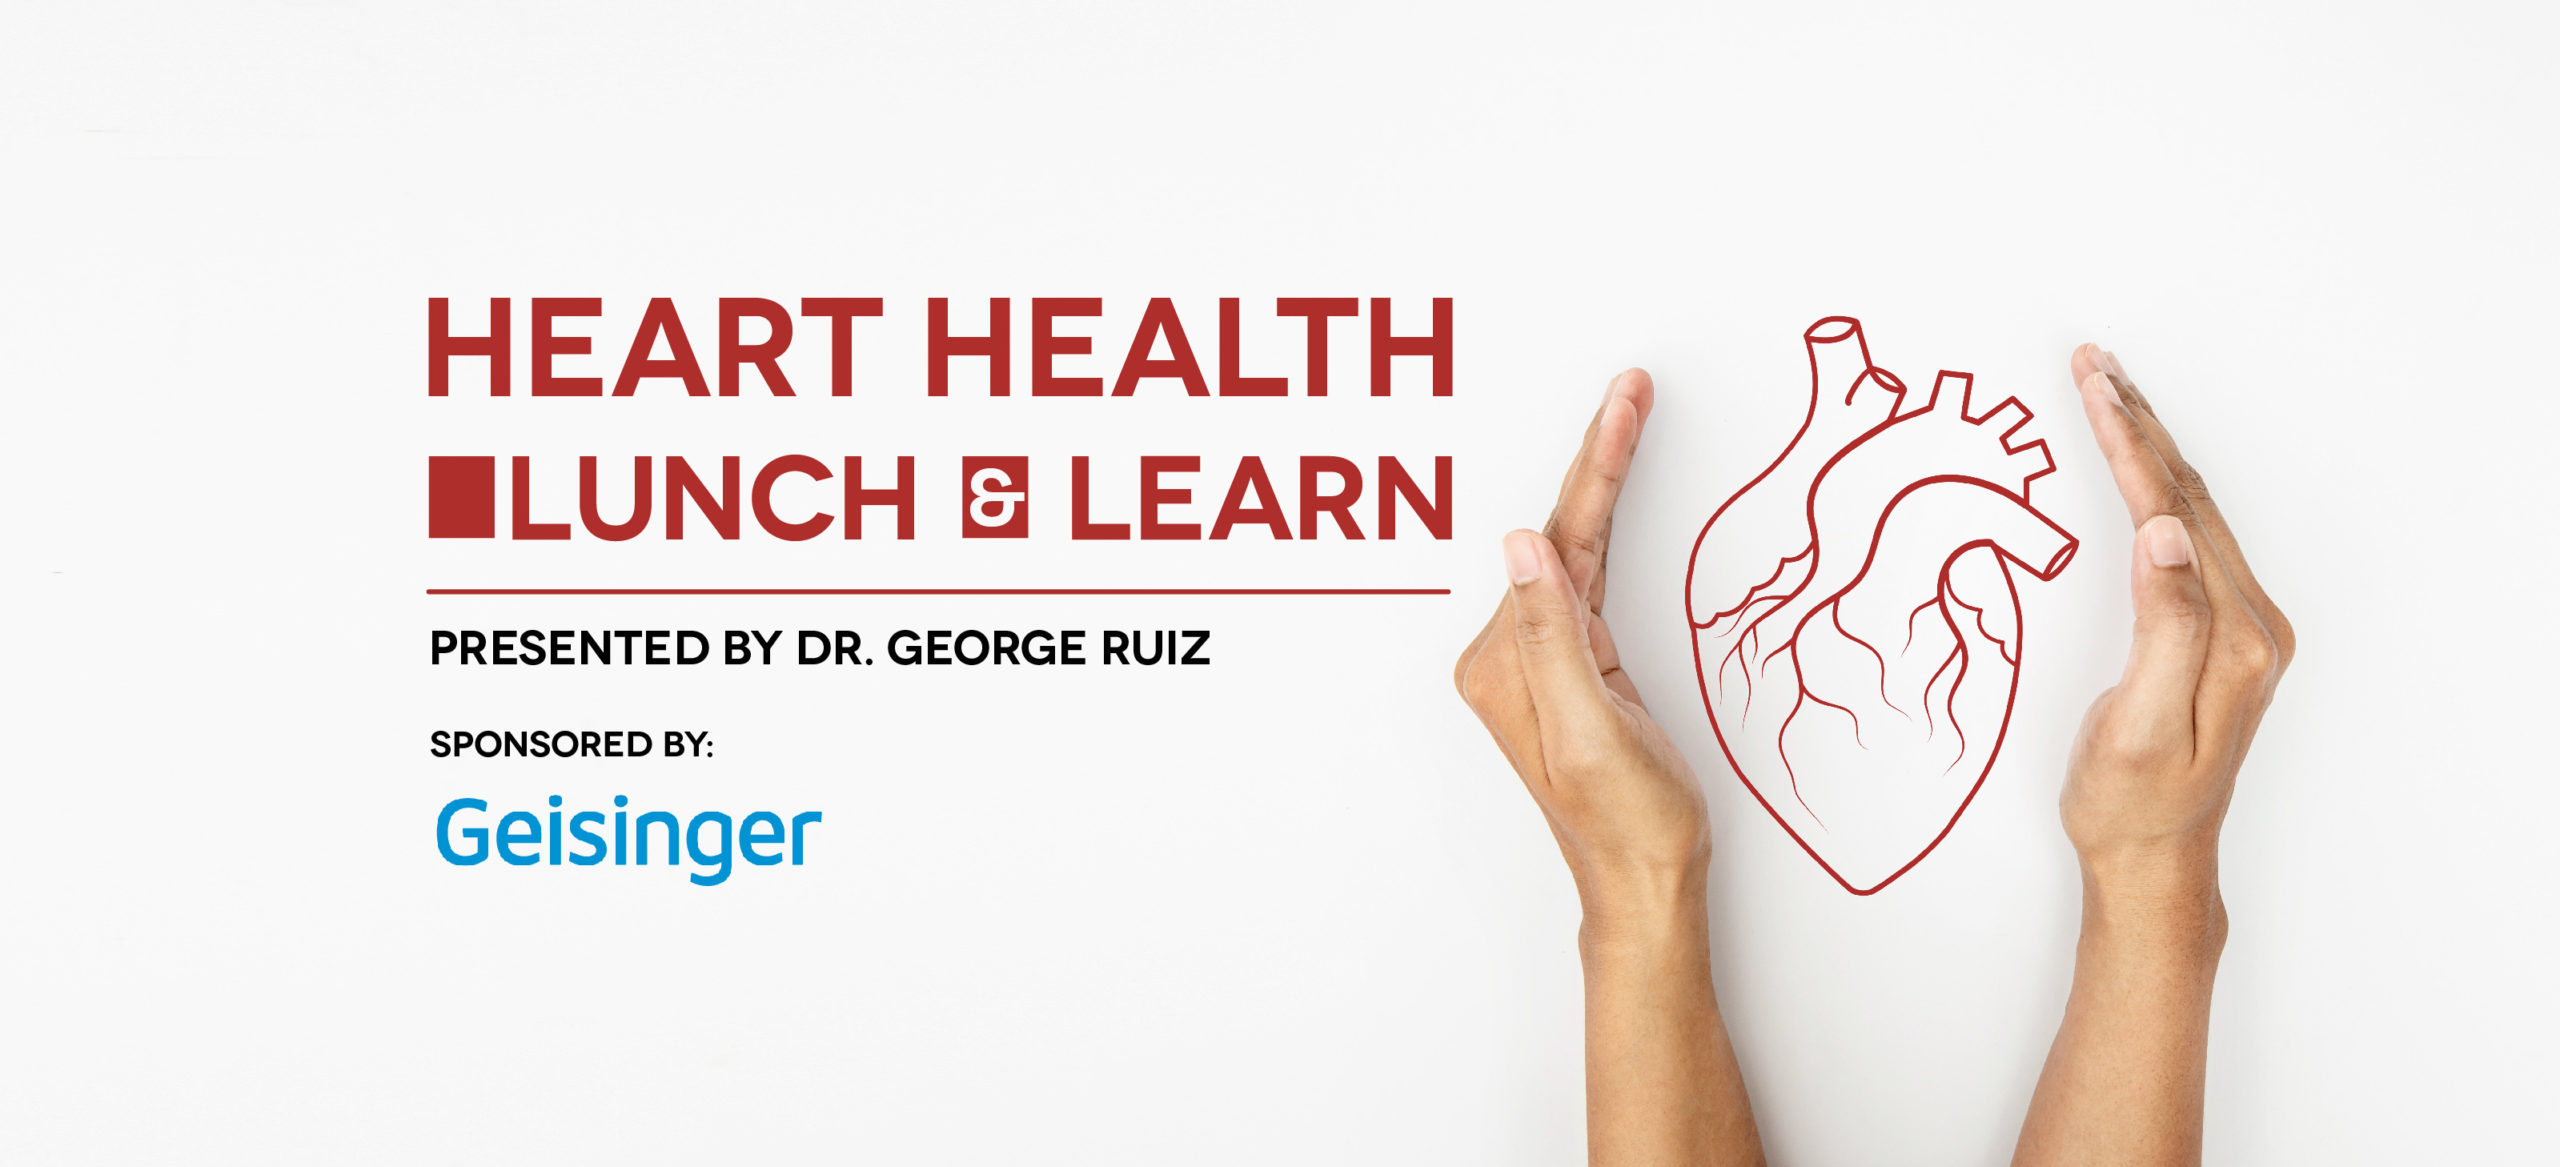 Heart Health Lunch & Learn